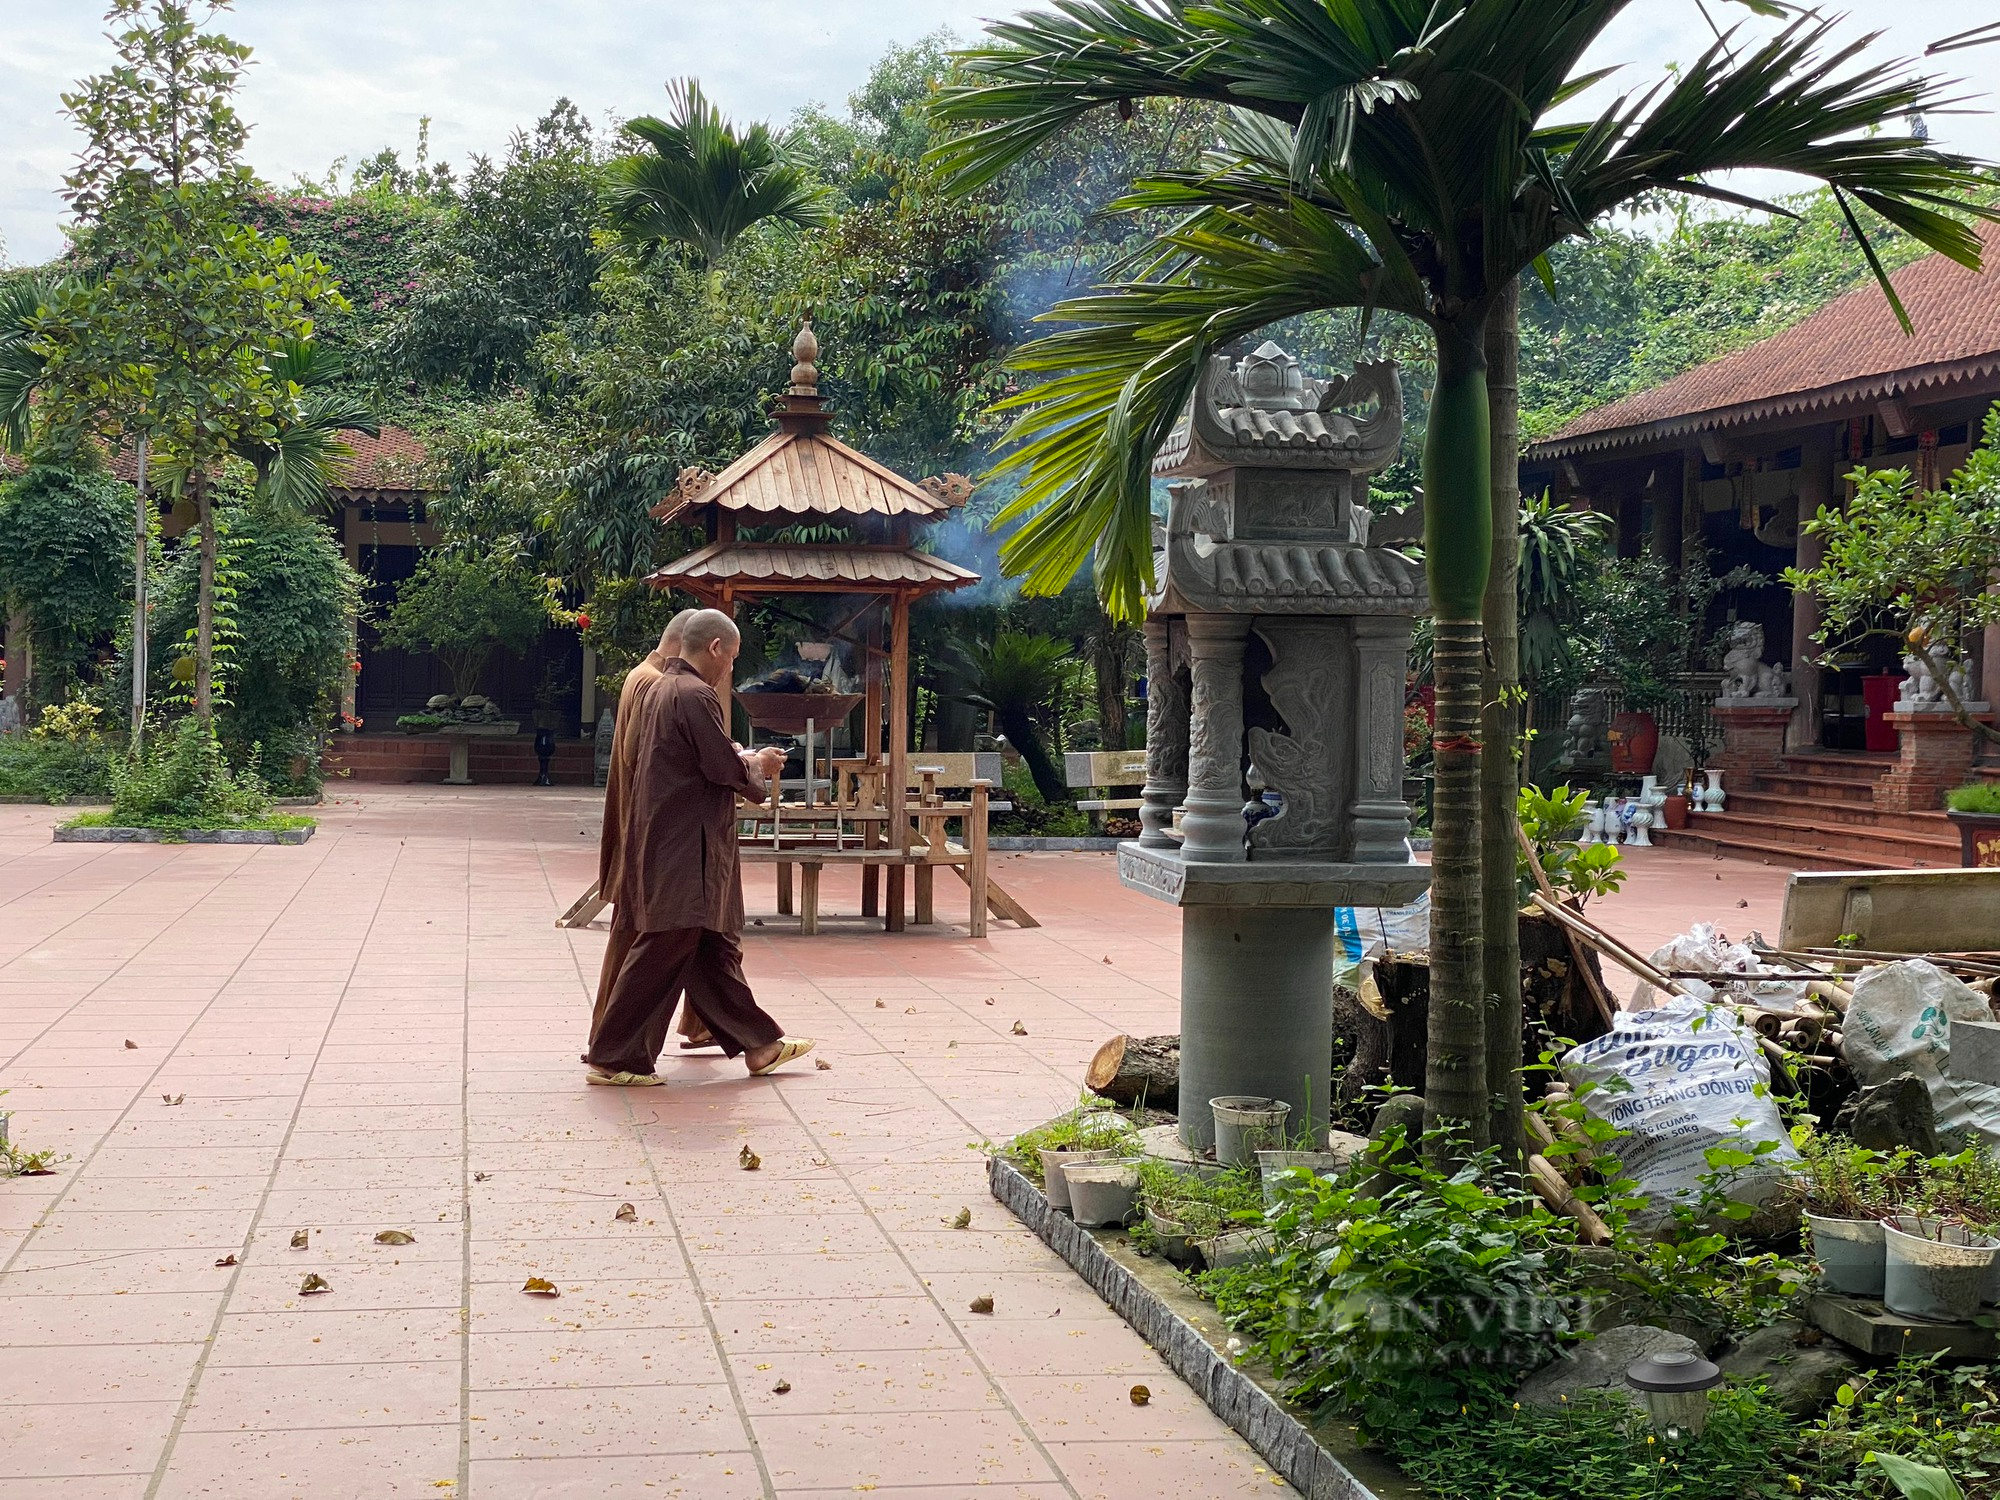 Vụ sư thầy tà dâm ở chùa Biện Sơn: Đôi lúc, người ta tìm đến cơ sở thờ tự chỉ để cầu lợi lộc… - Ảnh 3.